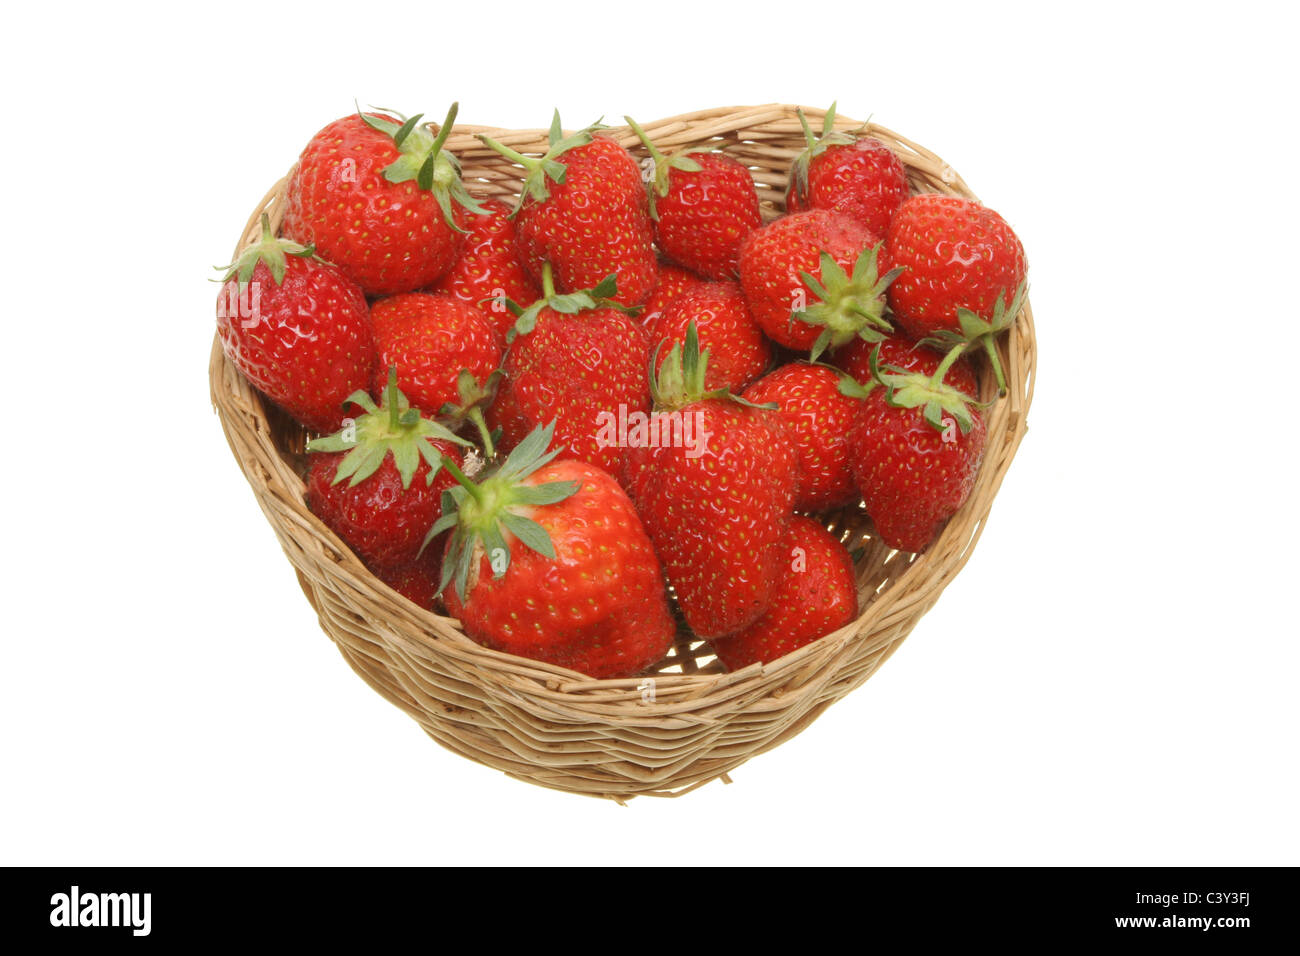 Las fresas maduras frescas en una canasta en forma de corazón Foto de stock